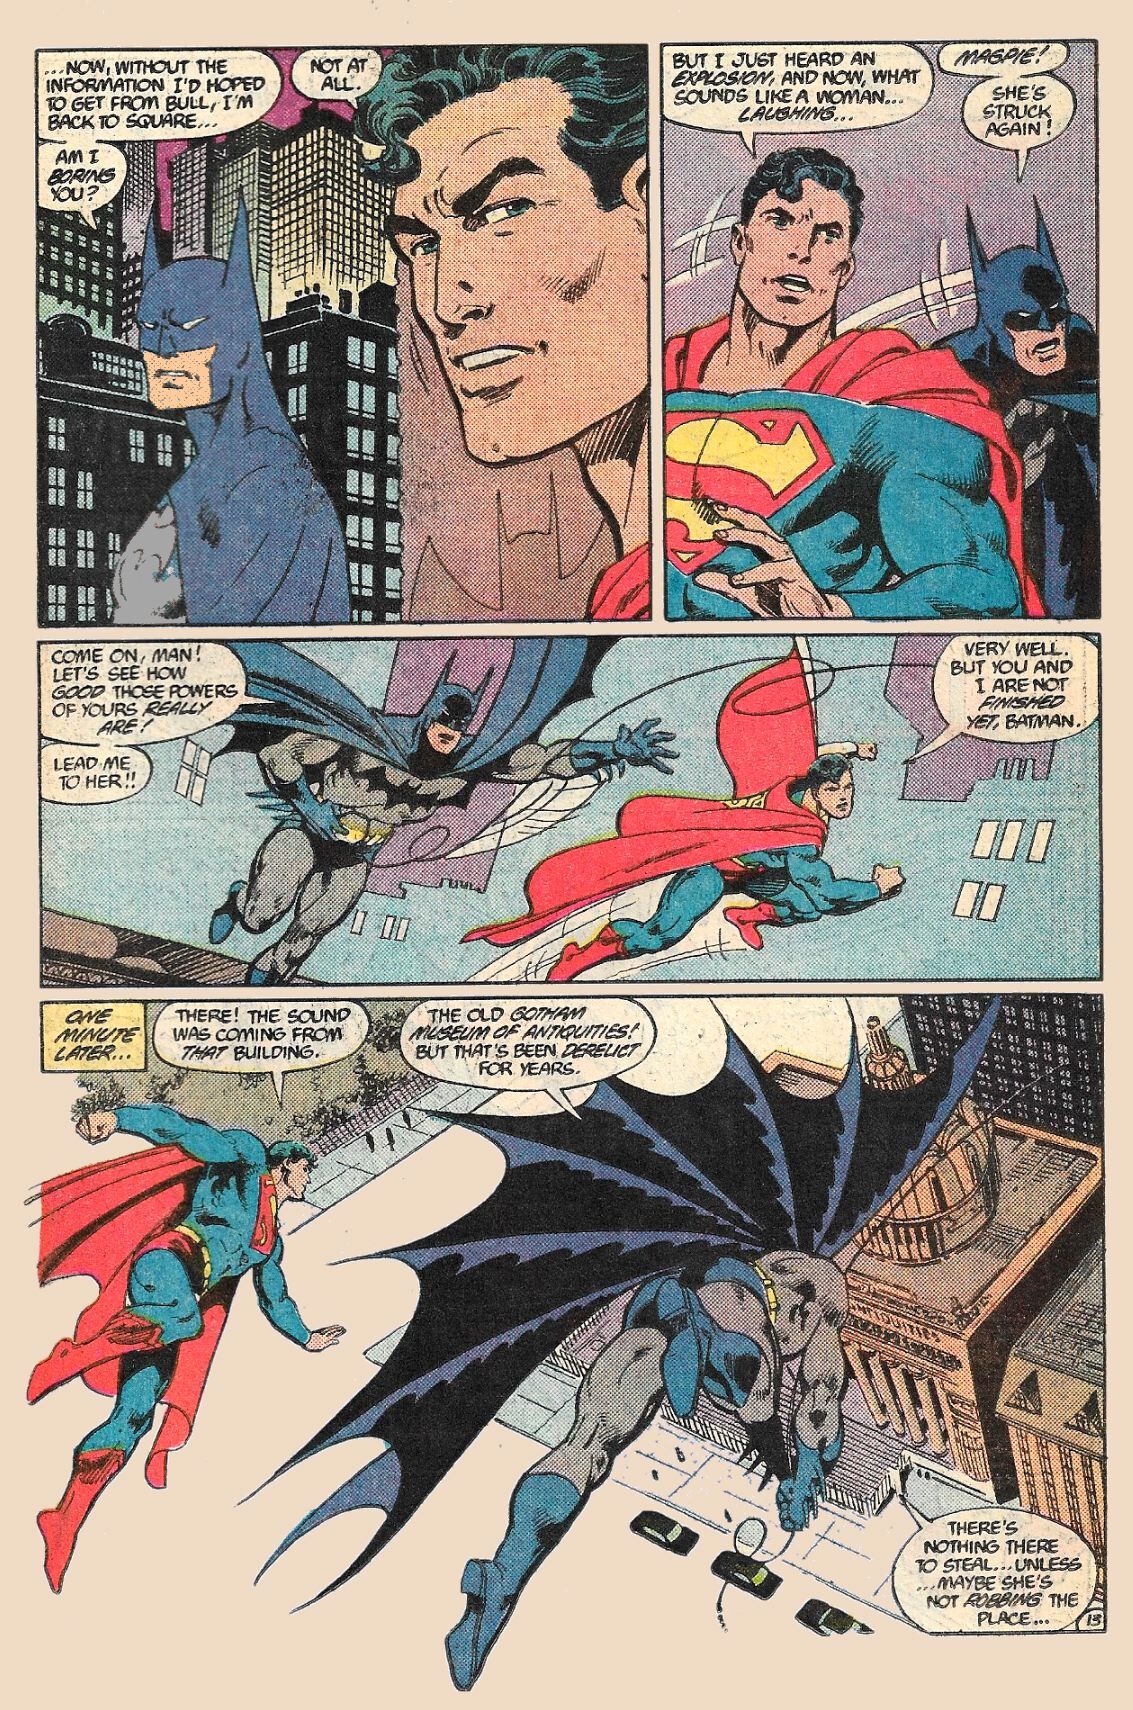 Superman Man of Steel #1-6 Complete Set (1986) John Byrne DC